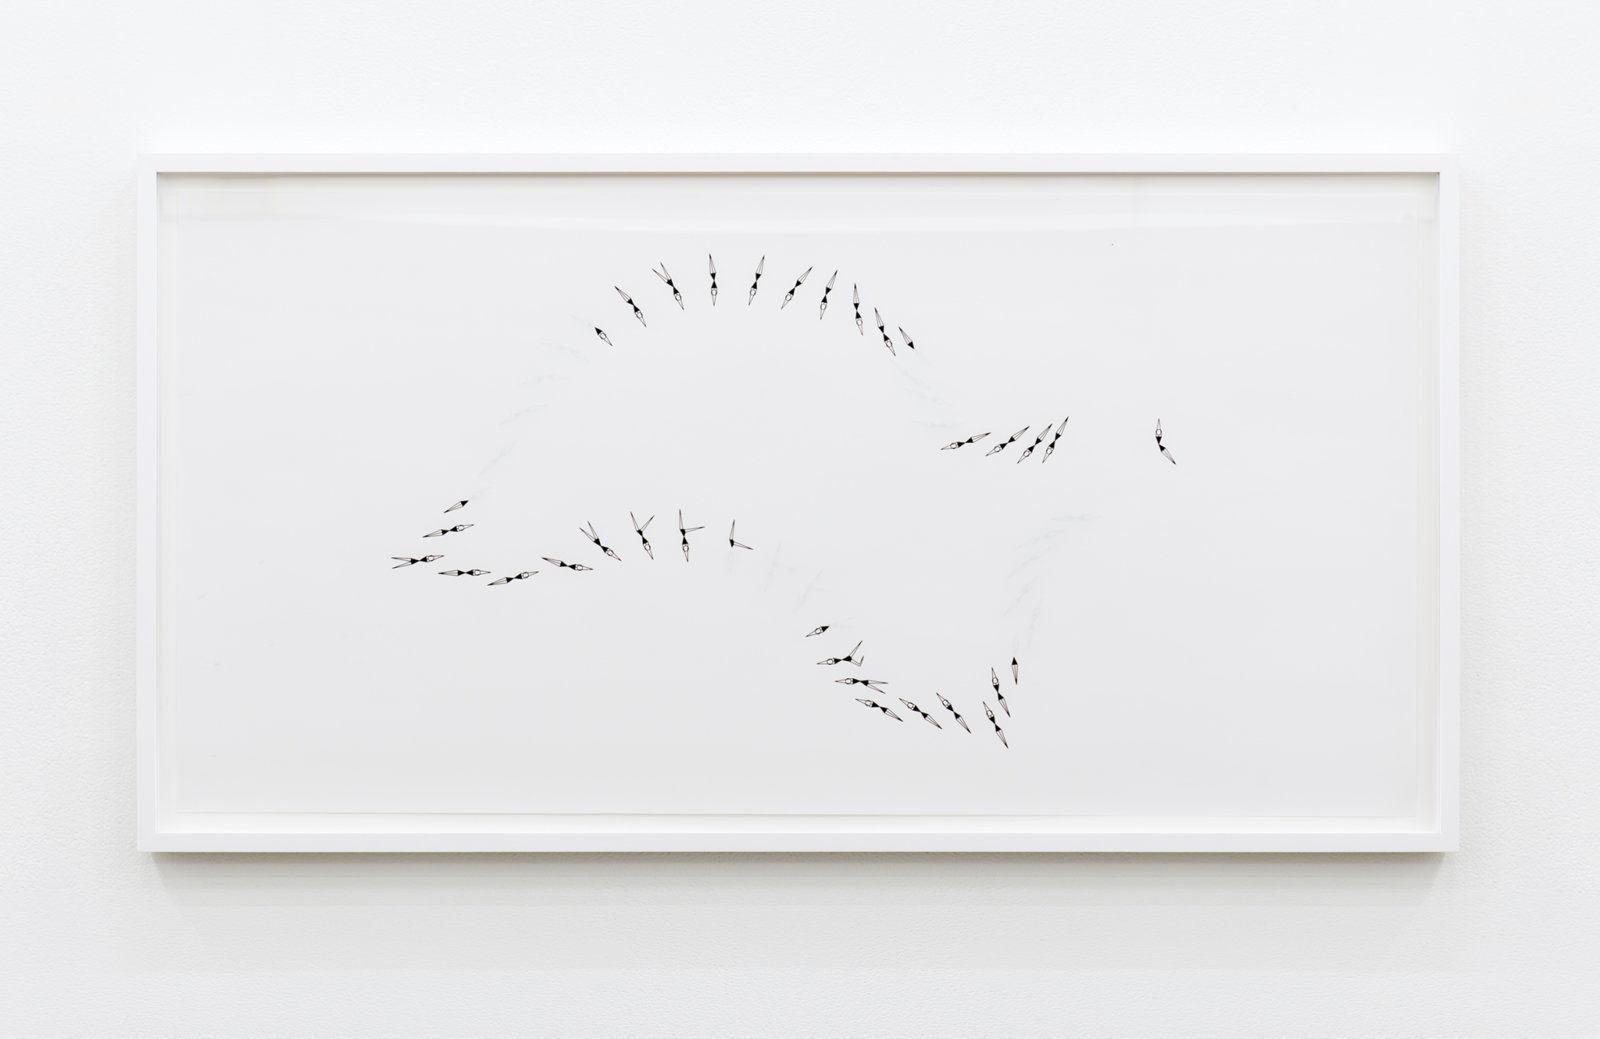 Janice Kerbel, Sync (Wobble), 2017, double sided silkscreen print on paper, 33 x 17 in. (84 x 42 cm)